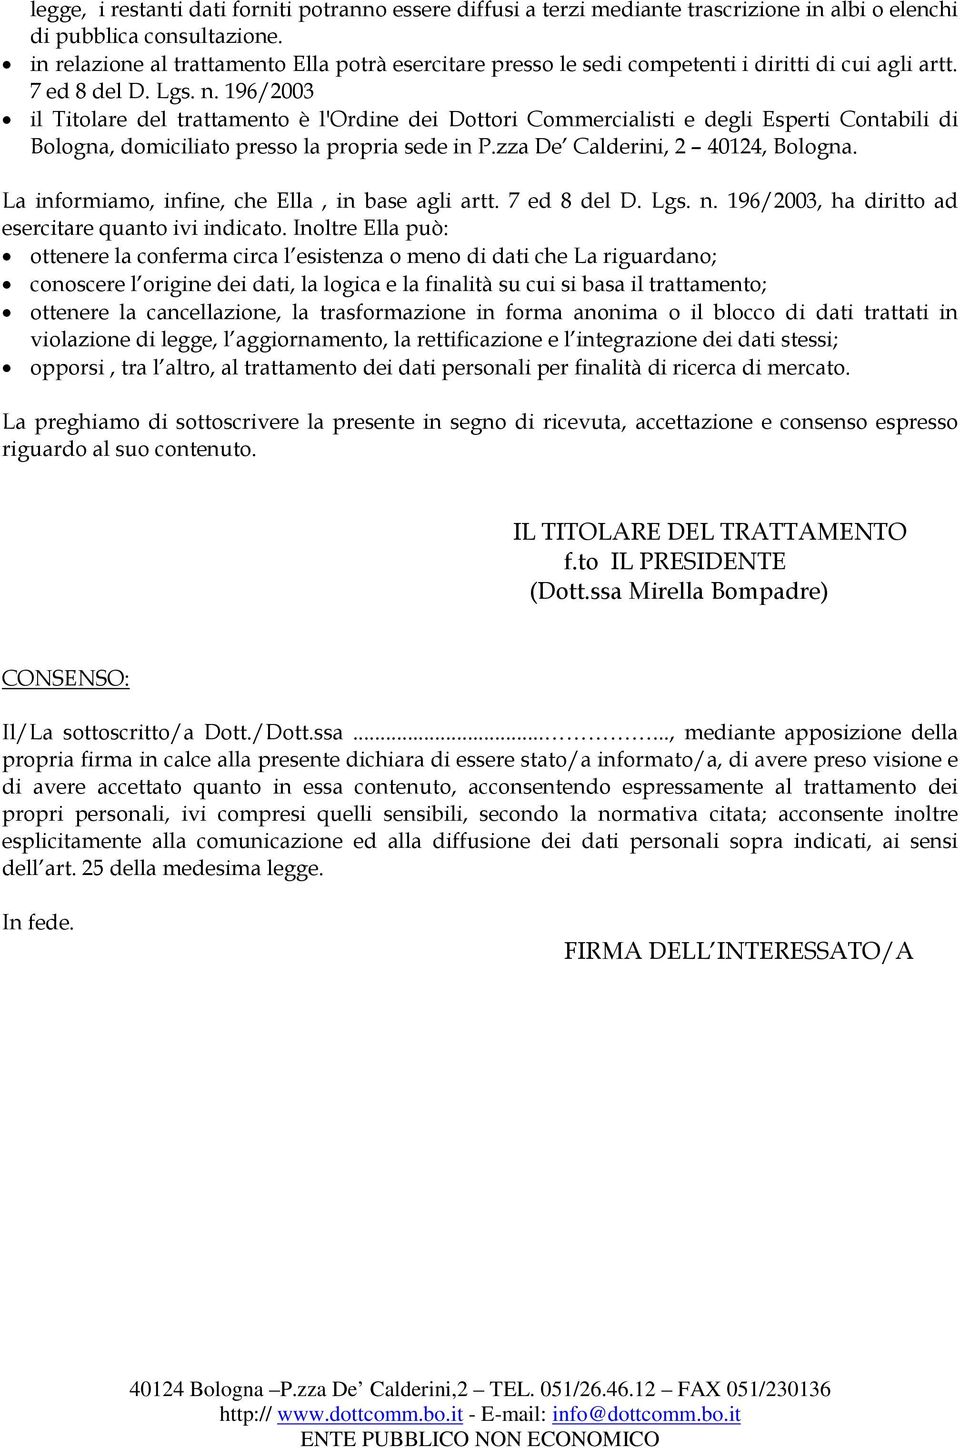 196/2003 il Titolare del trattamento è l'ordine dei Dottori Commercialisti e degli Esperti Contabili di Bologna, domiciliato presso la propria sede in P.zza De Calderini, 2 40124, Bologna.